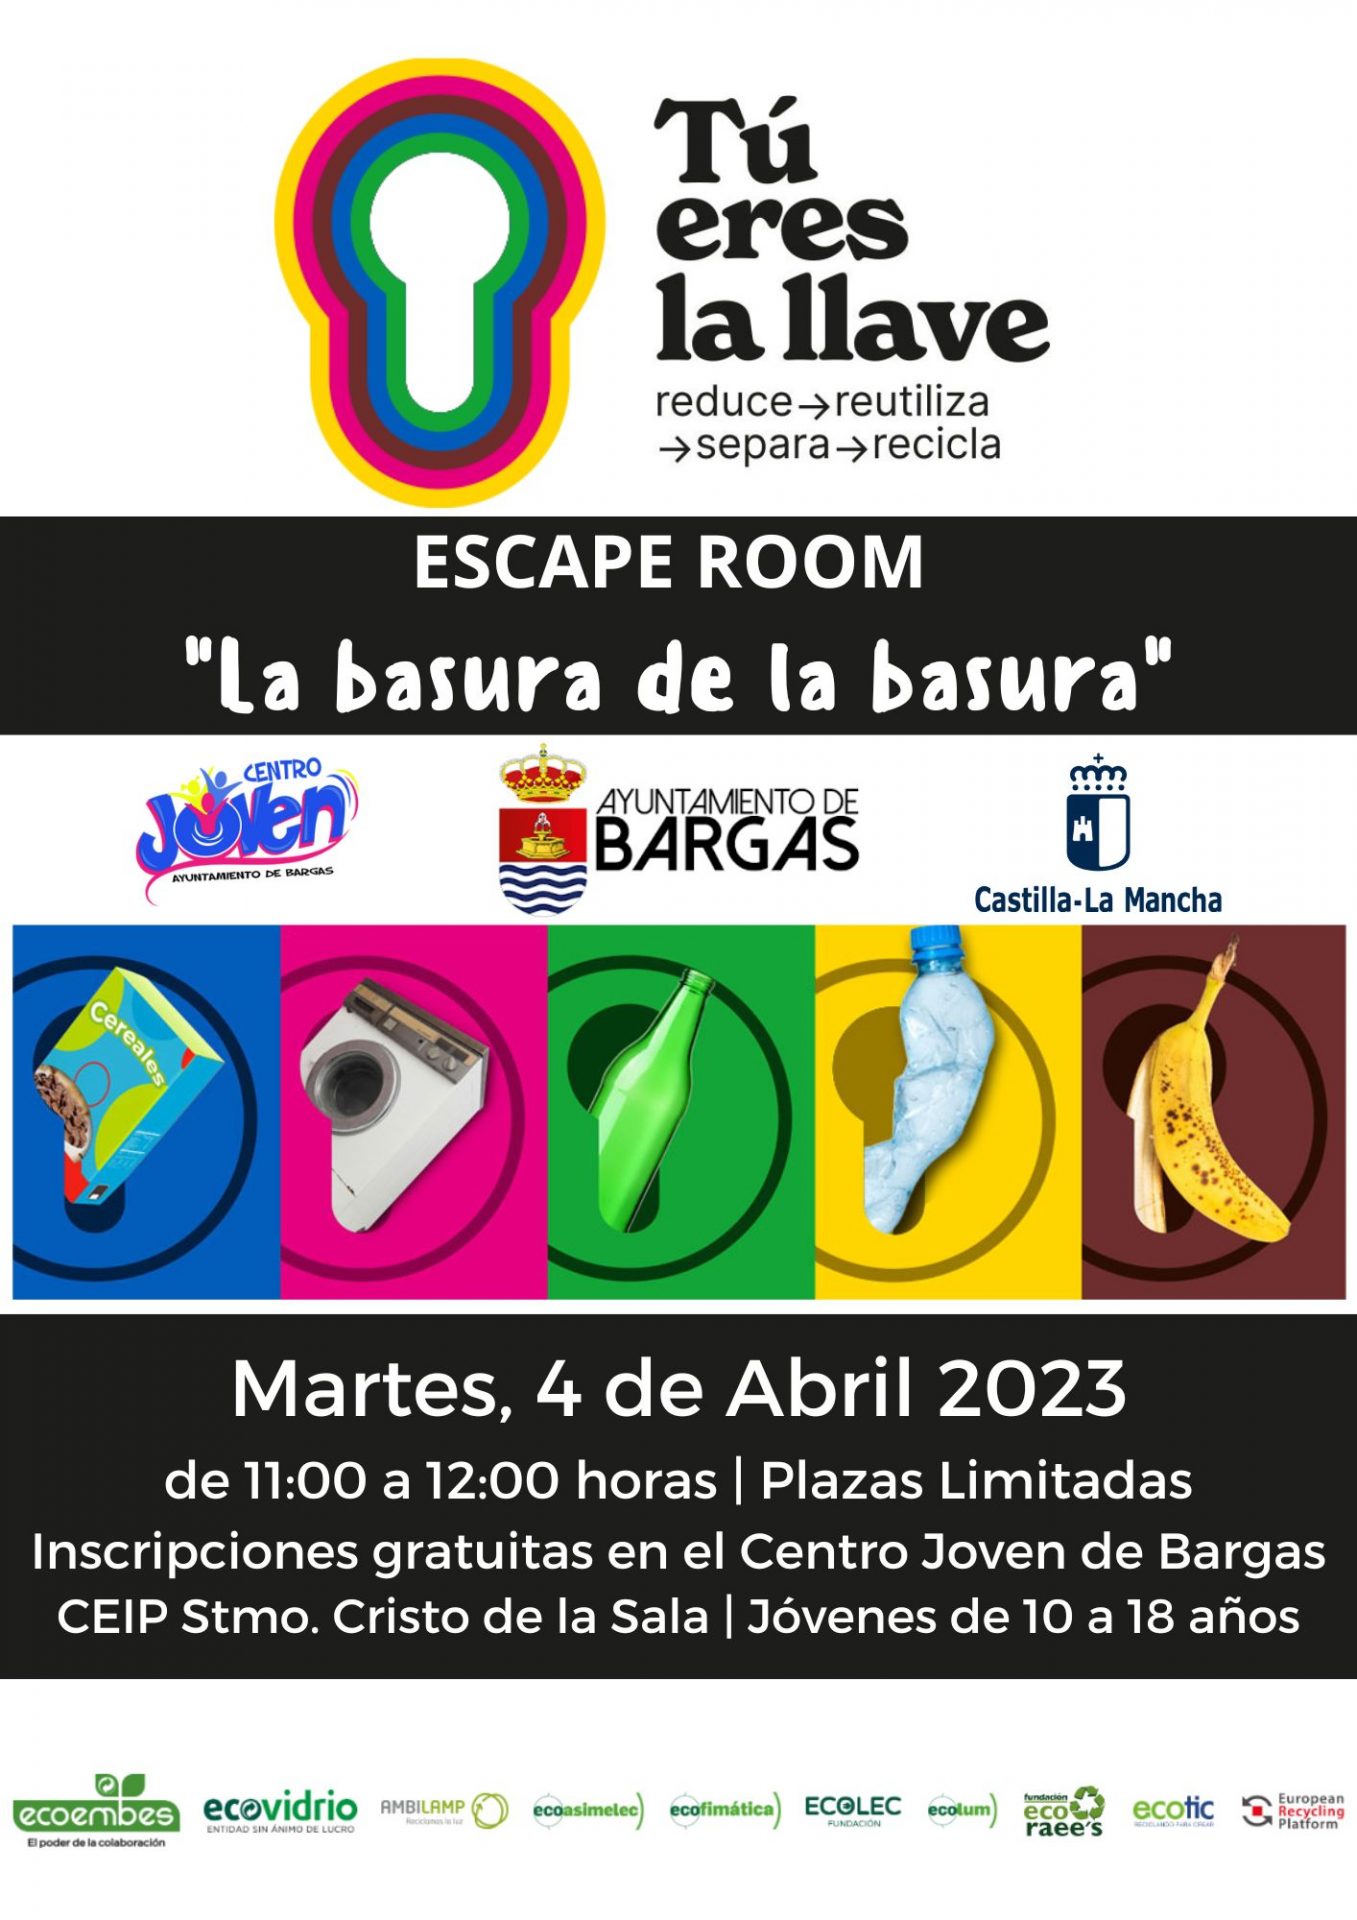 Nuevo Escape Room en Bargas, «Tú eres la llave»